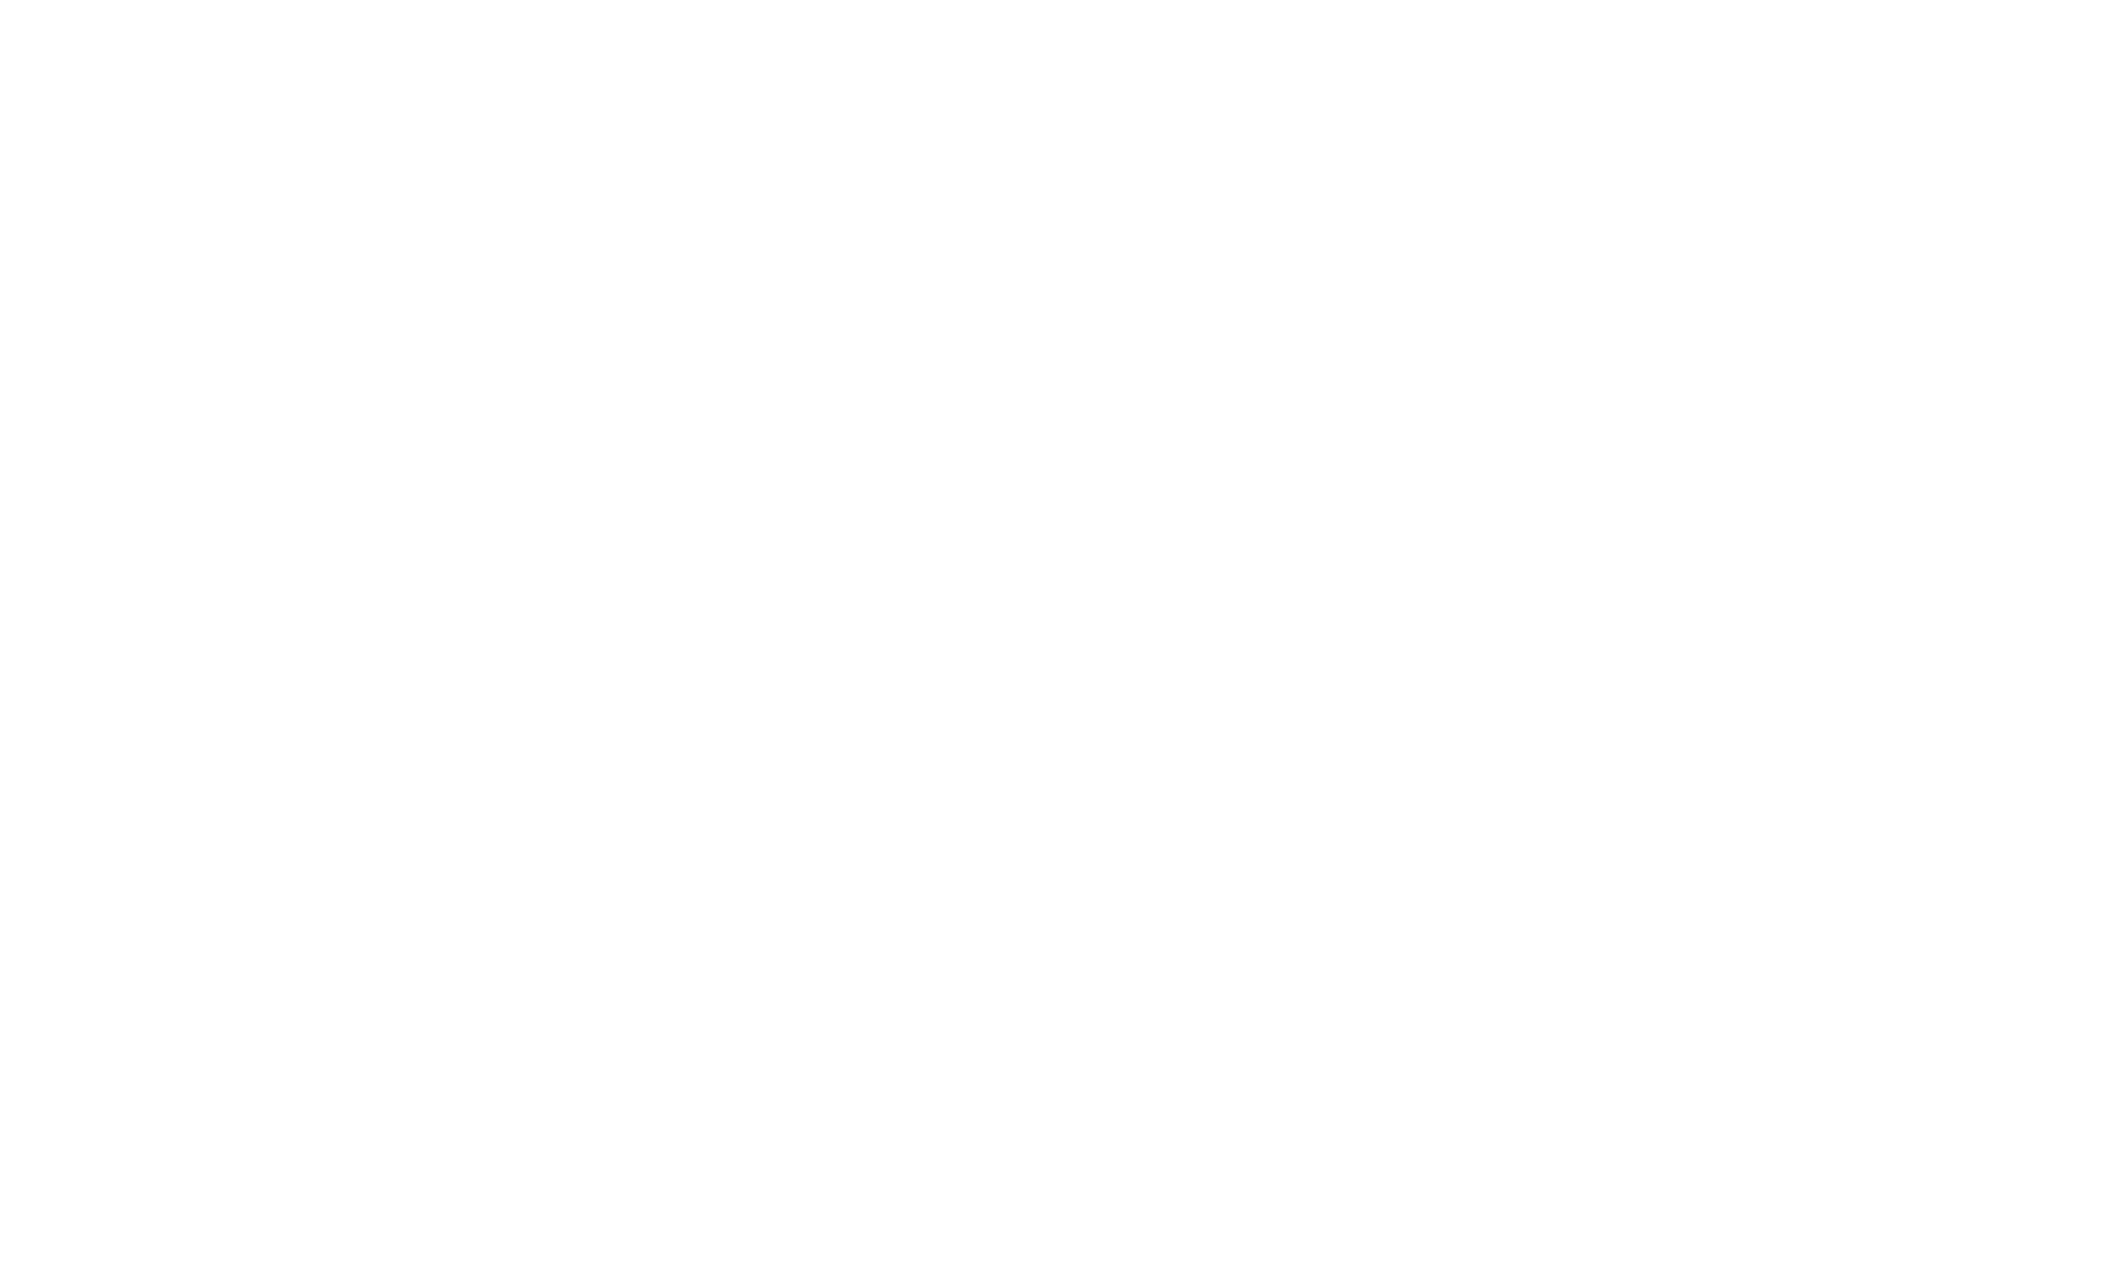 Startup Calgary